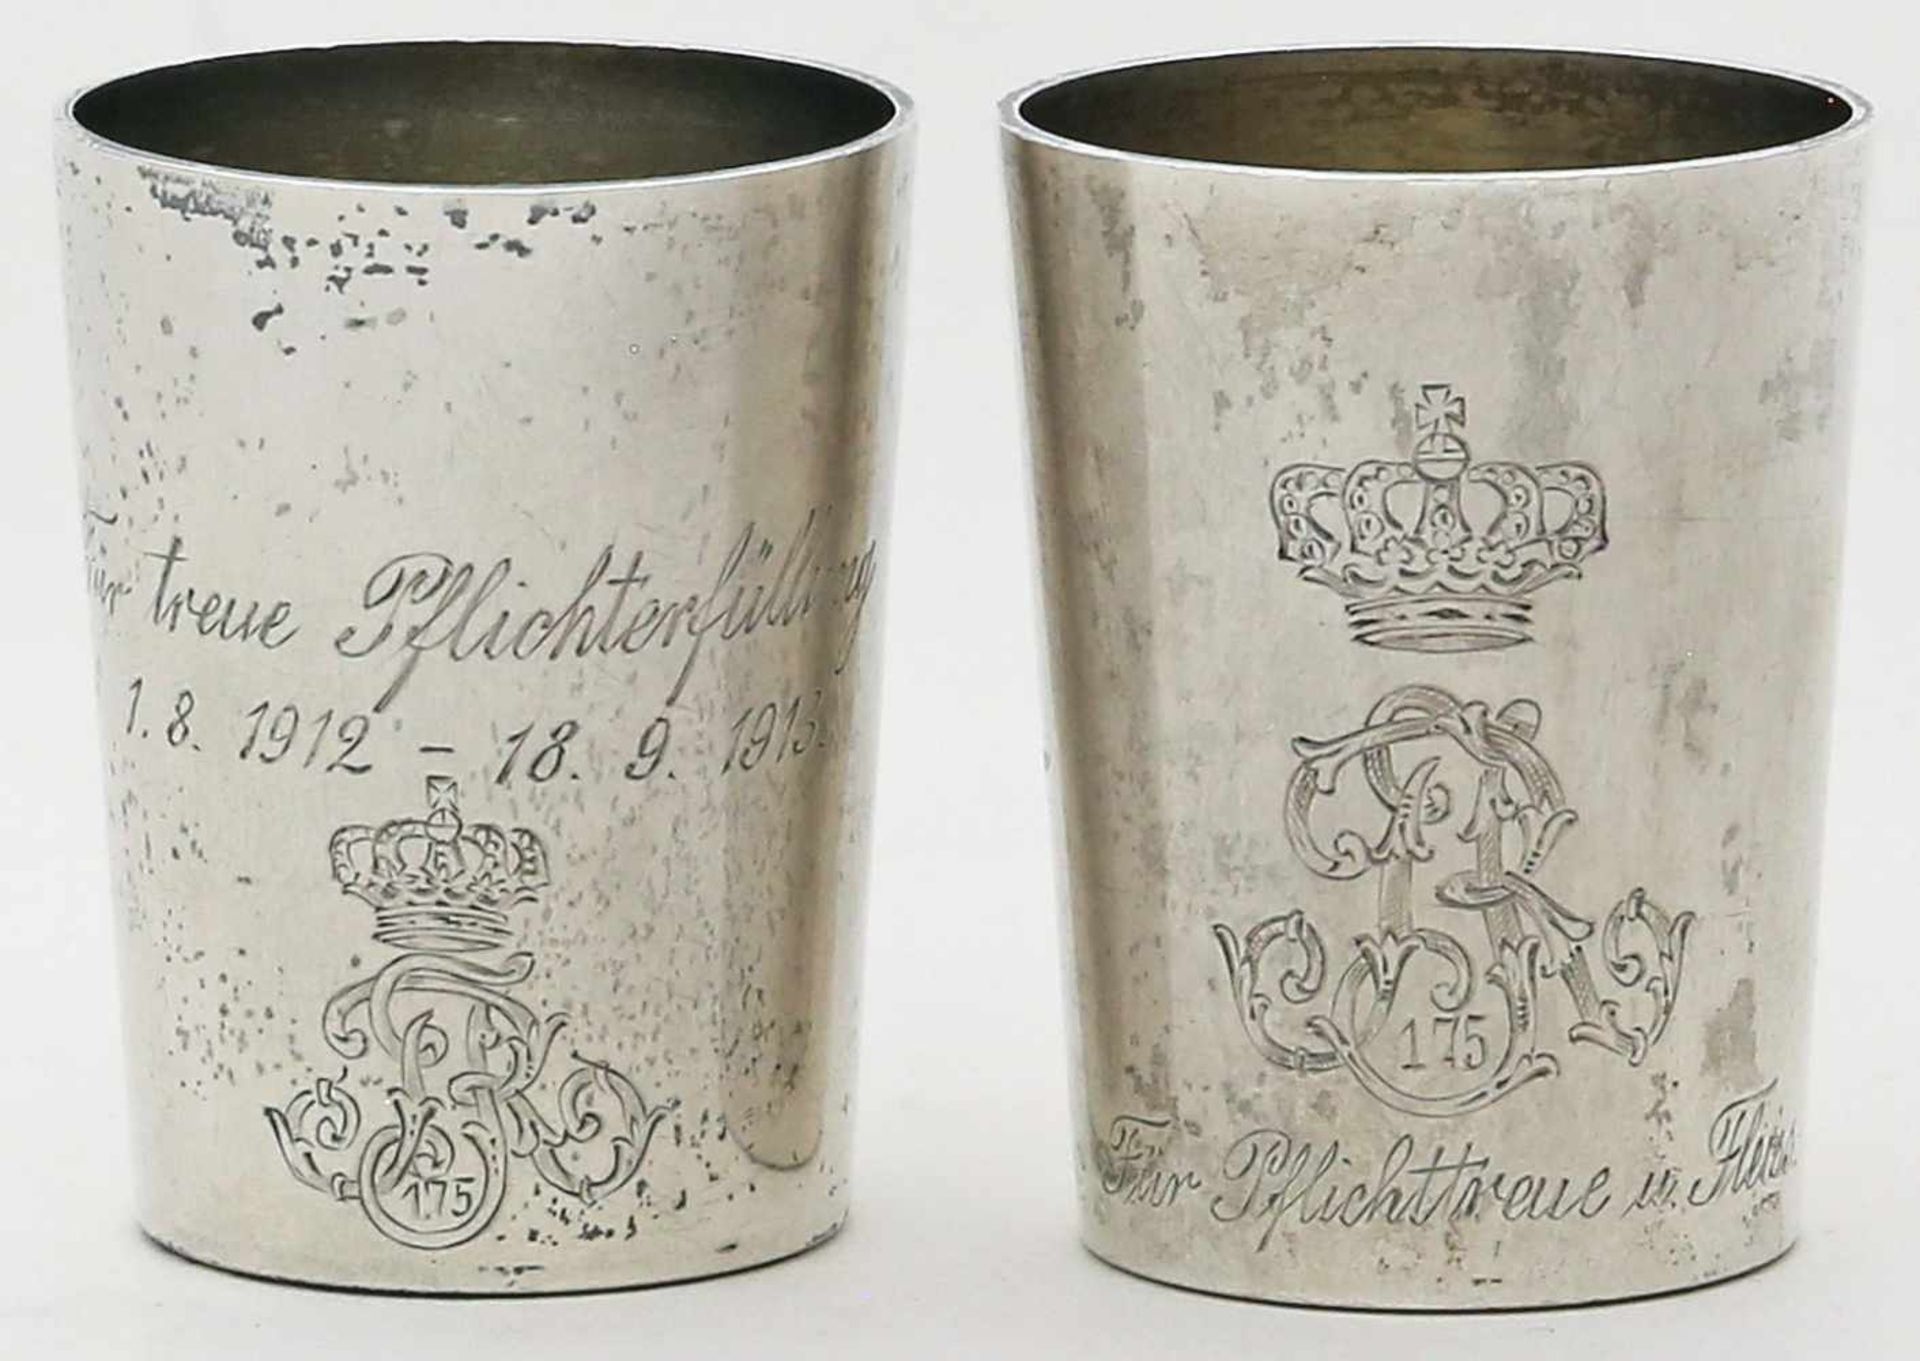 Paar Wappenbecher.Silber, 56 g. Glatte Wandung mit gravierter Krone und Inschrift "Hauptmann u.